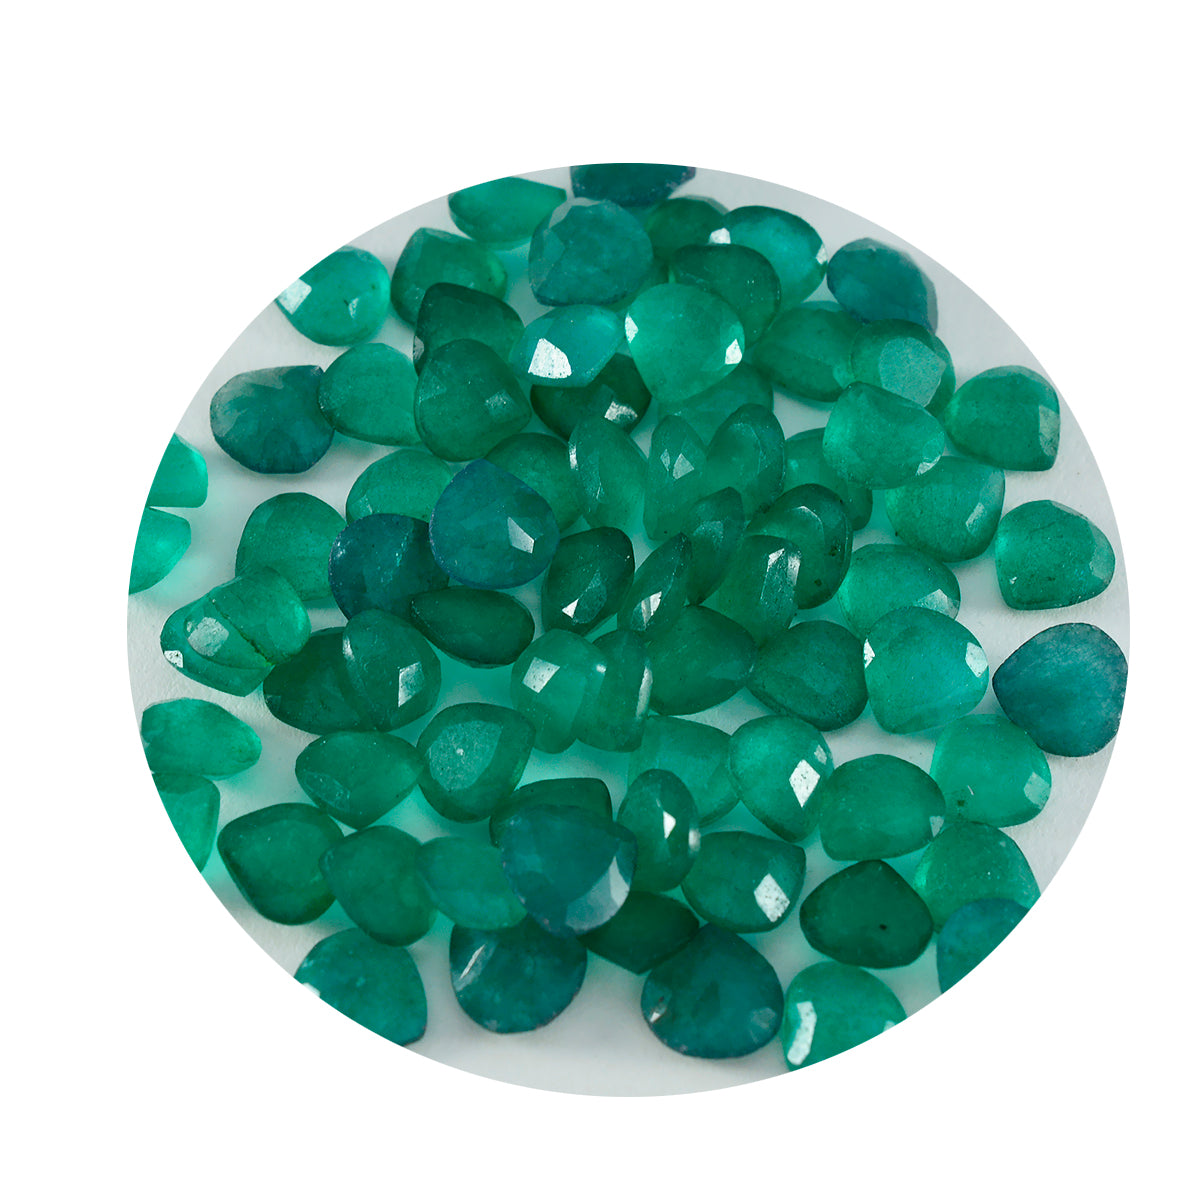 riyogems 1 шт. настоящая зеленая яшма граненая 7x7 мм в форме сердца милый качественный свободный драгоценный камень